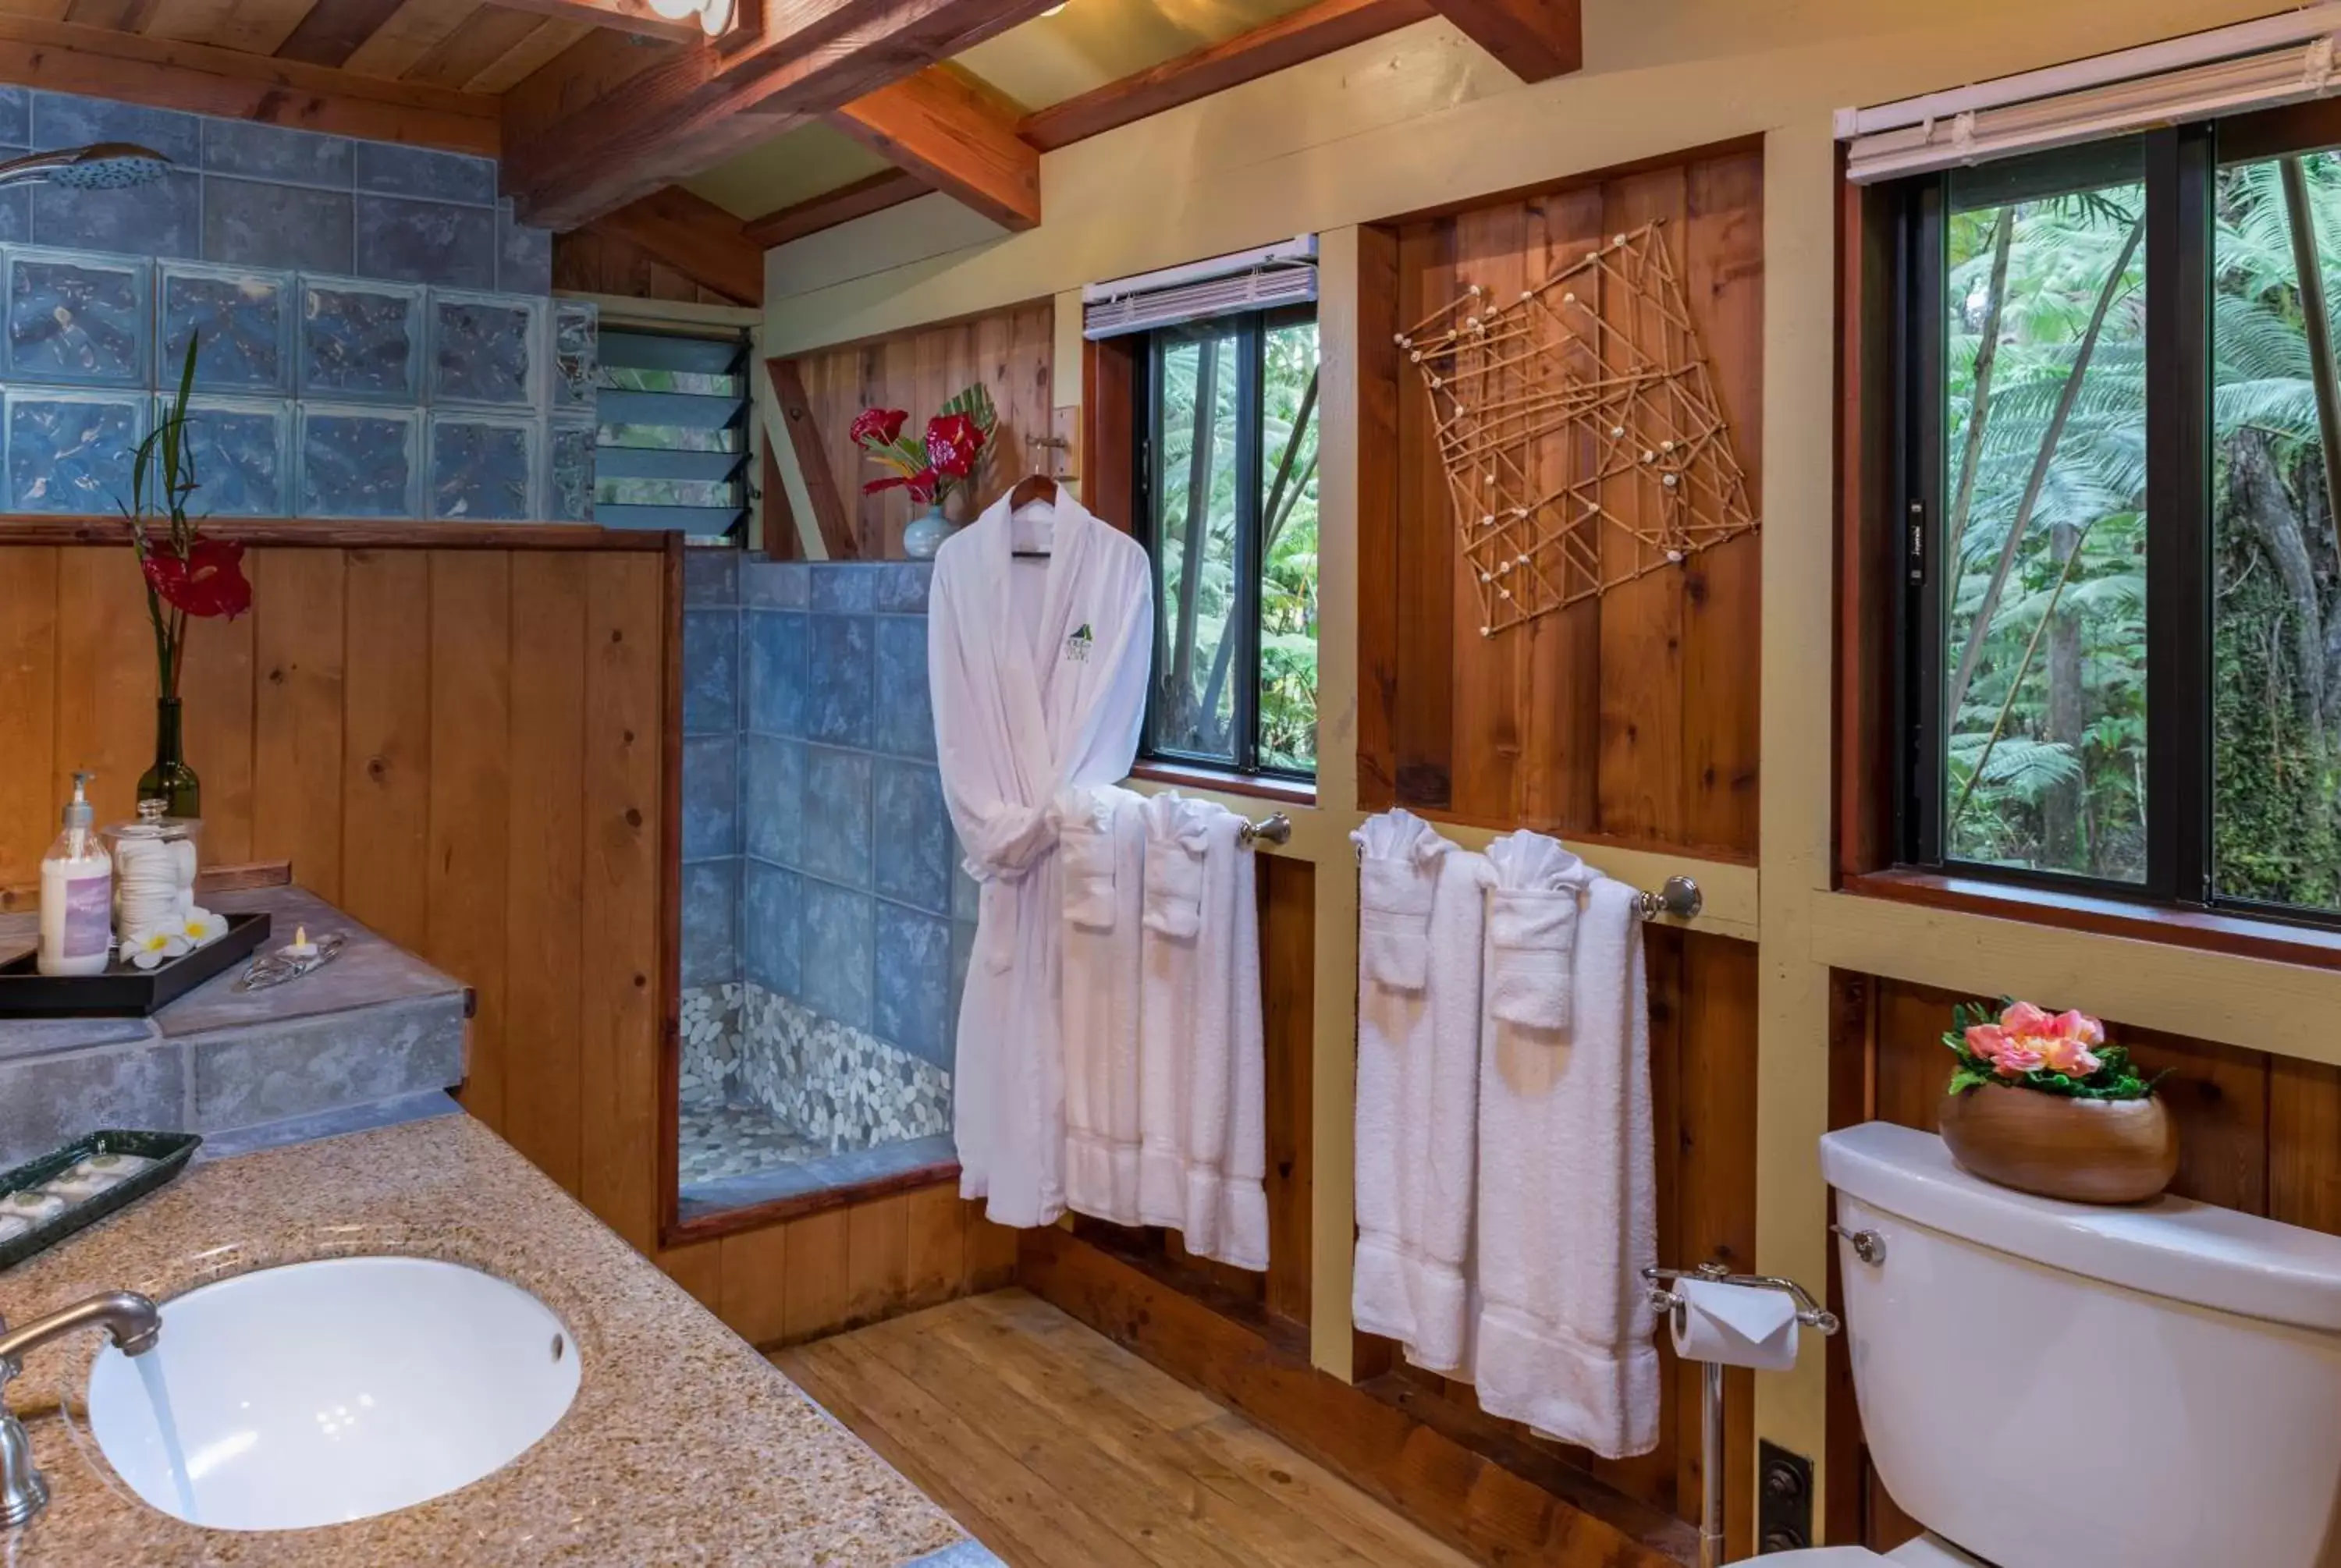 Bathroom in Volcano Village Lodge